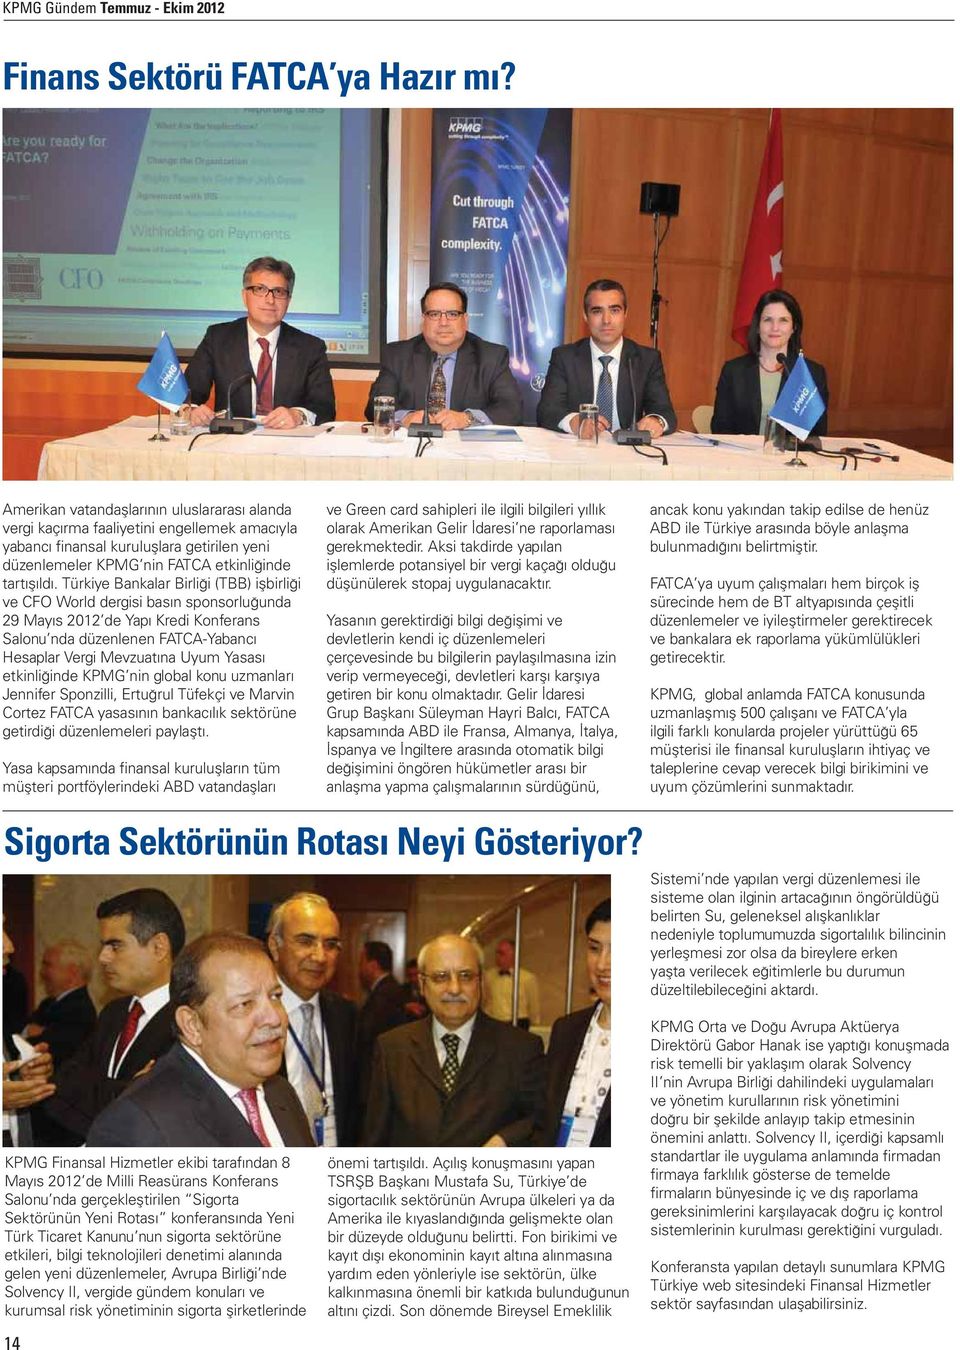 Türkiye Bankalar Birliği (TBB) işbirliği ve CFO World dergisi basın sponsorluğunda 29 Mayıs 2012 de Yapı Kredi Konferans Salonu nda düzenlenen FATCA-Yabancı Hesaplar Vergi Mevzuatına Uyum Yasası